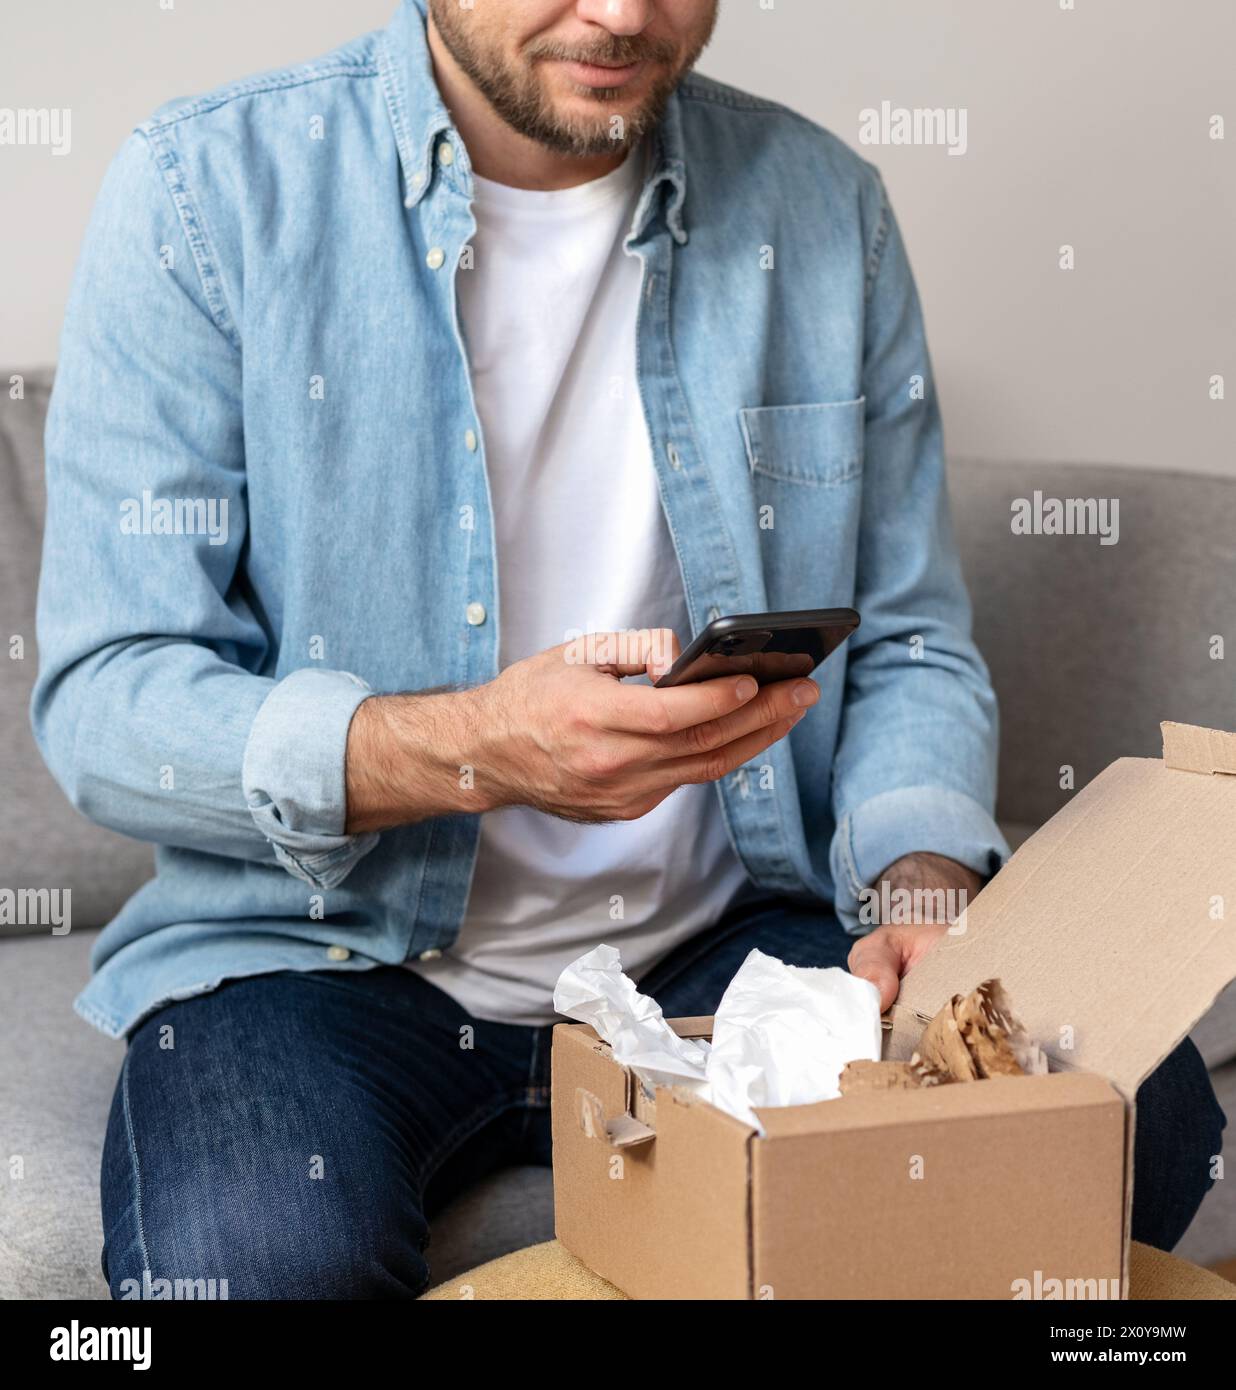 Homme dans une chemise en denim déballe un paquet et prend une photo de son achat, commande internet. Personne partageant des commentaires avec la boutique en ligne en utilisant le sien Banque D'Images